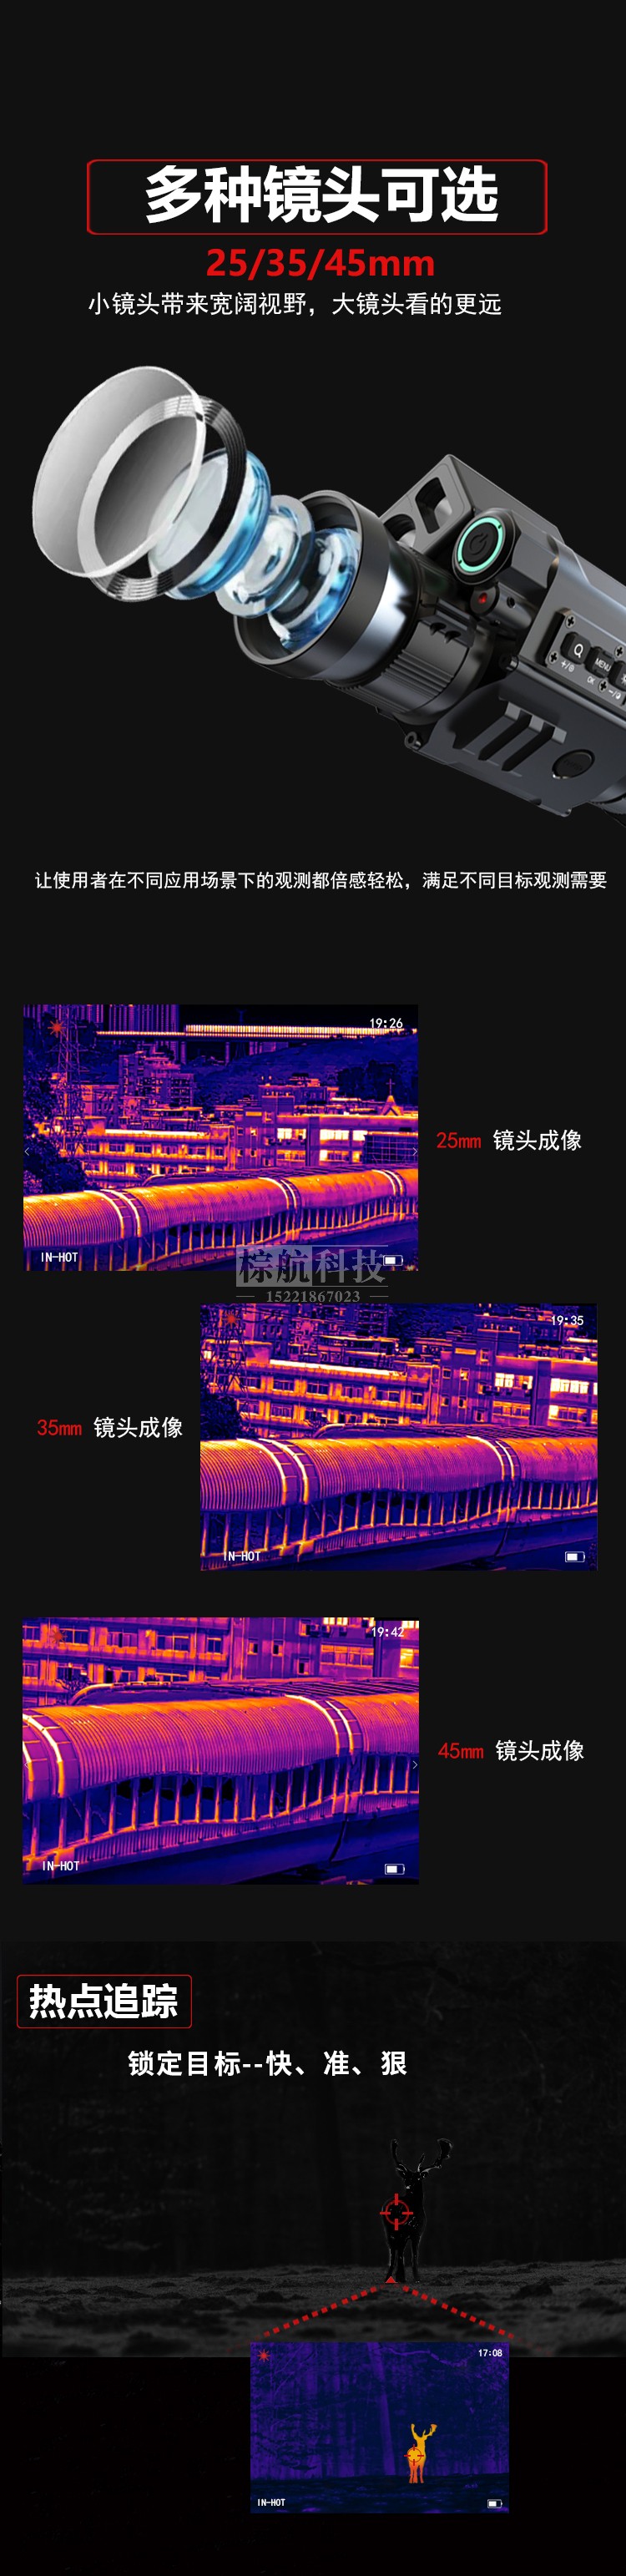 普雷德SC45SC25SC35热成像 多镜头及成像效果图.jpg